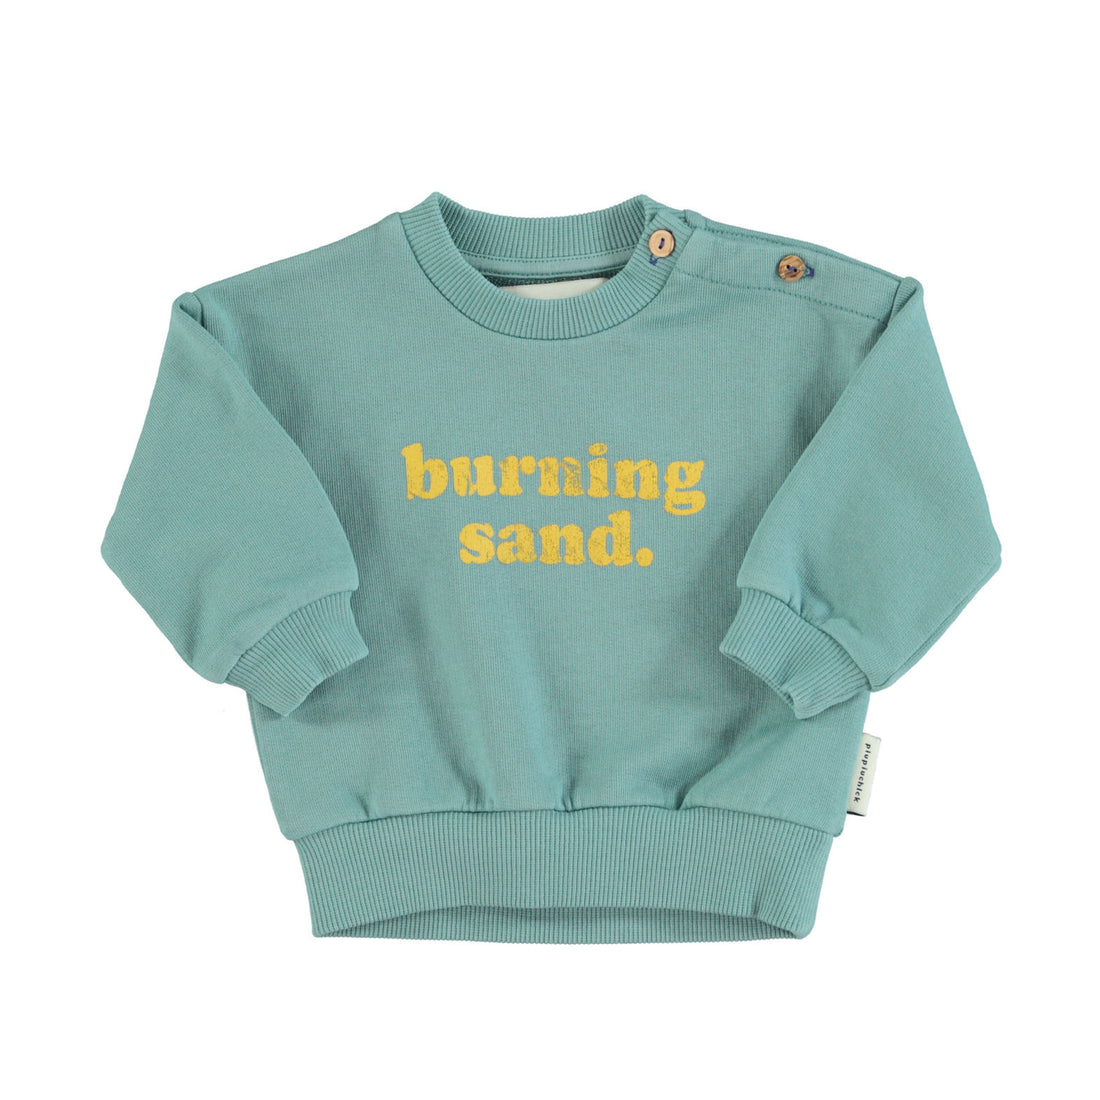 Piupiuchick Green Burning Sand Sweatshirt